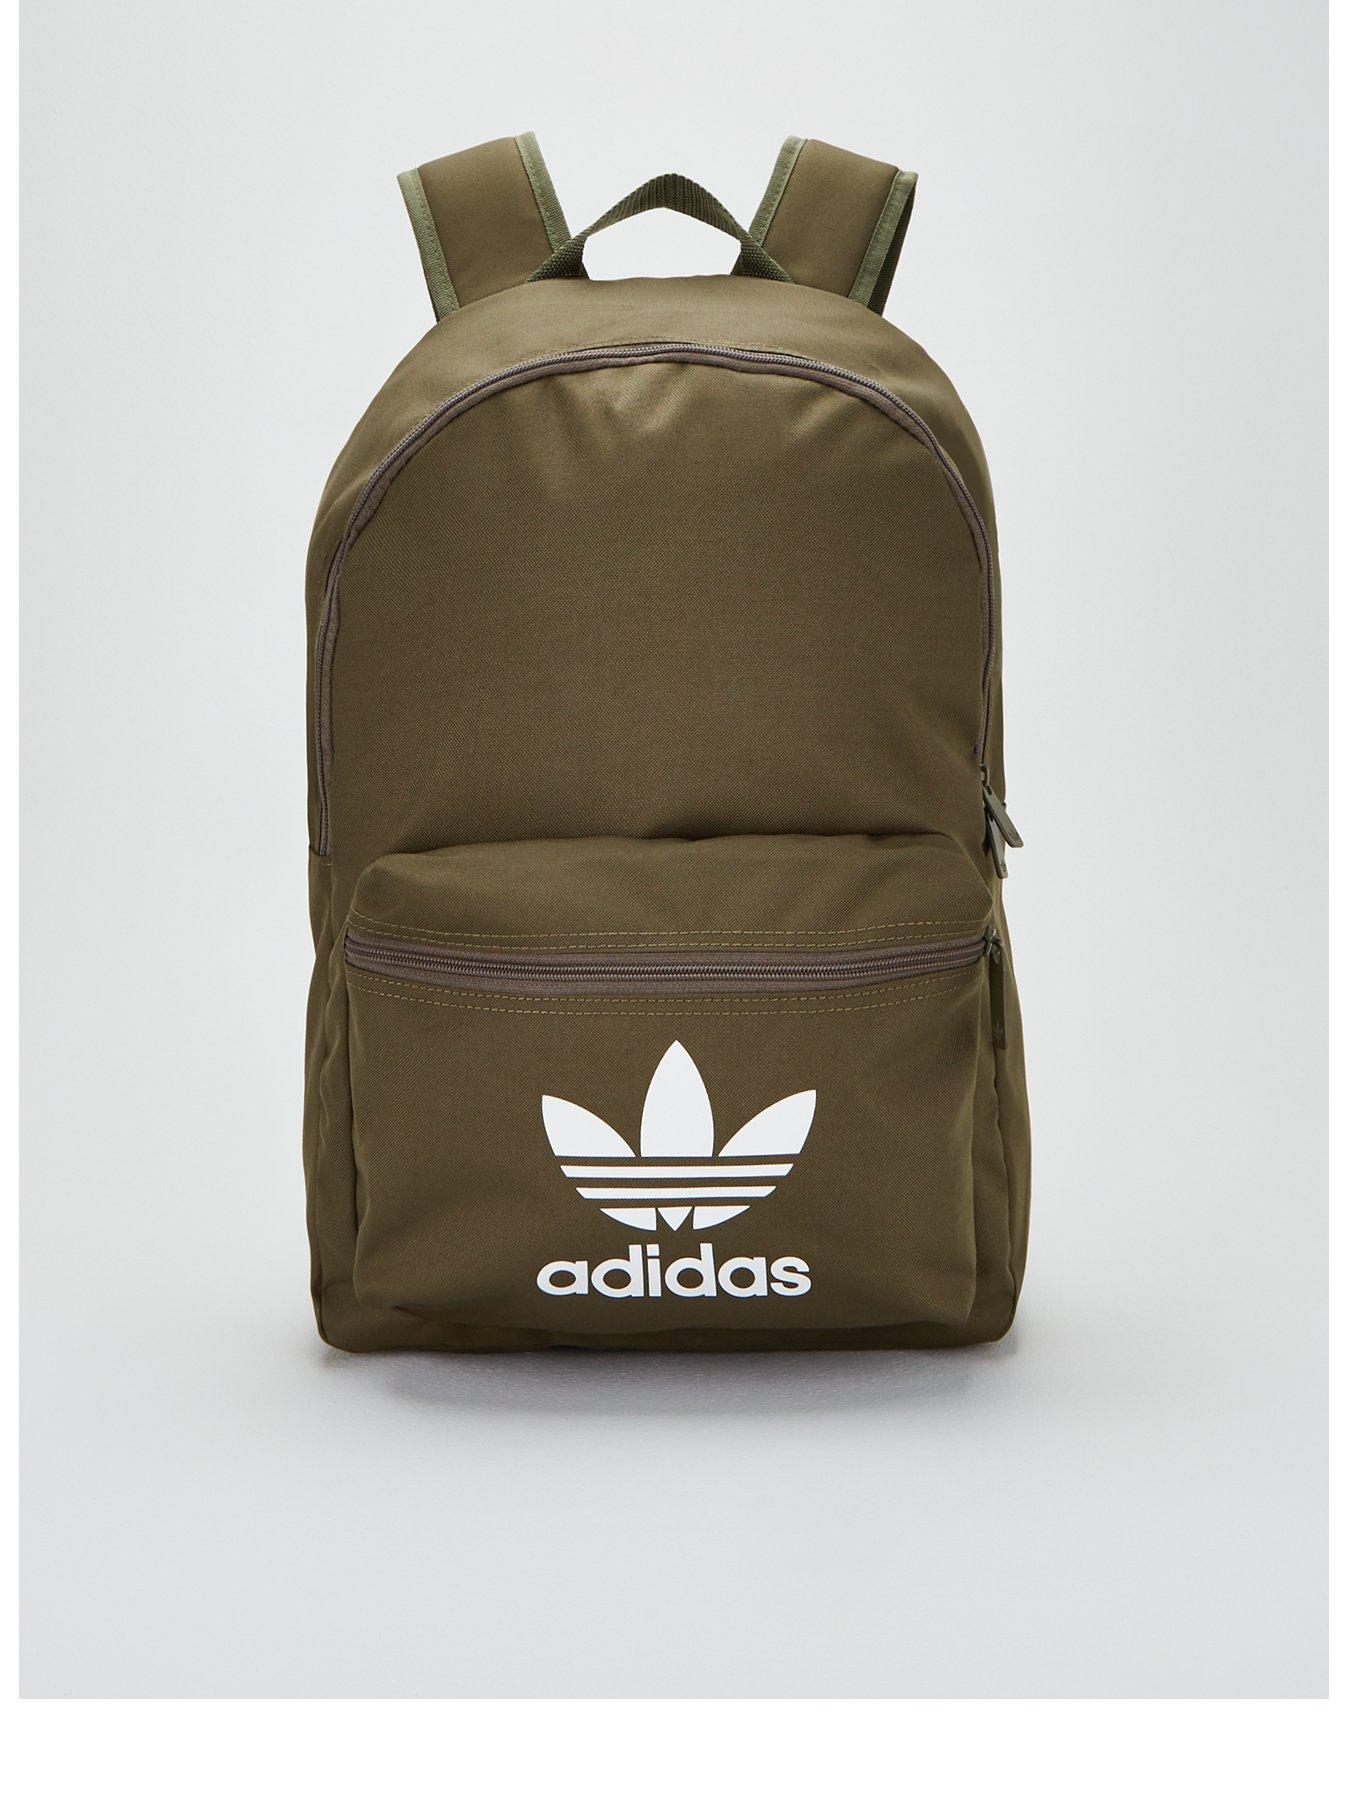 adidas khaki backpack